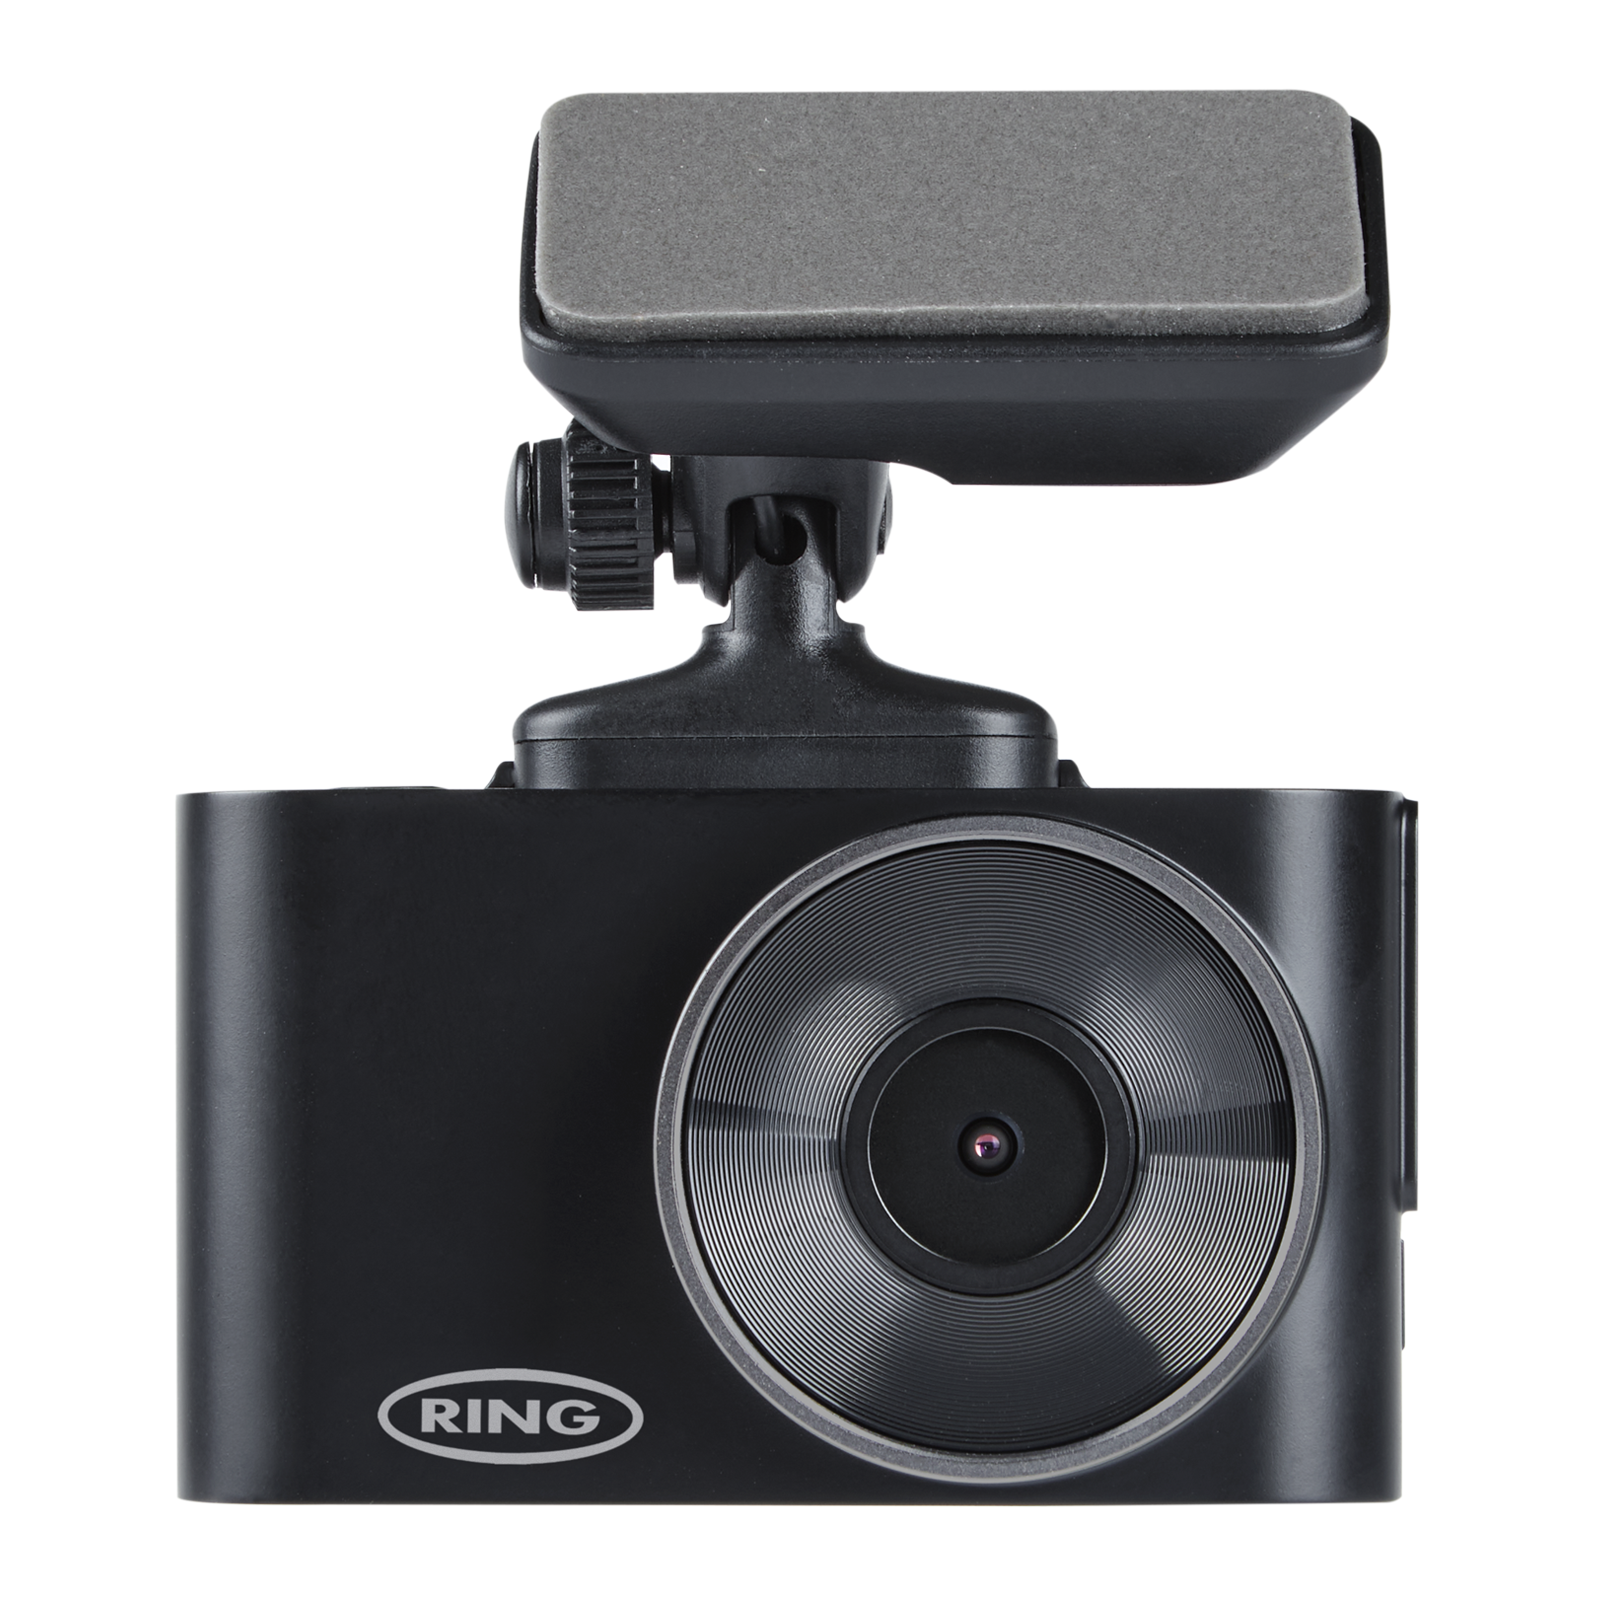 RSDC3000 Smart Dash Camera wins mini Test